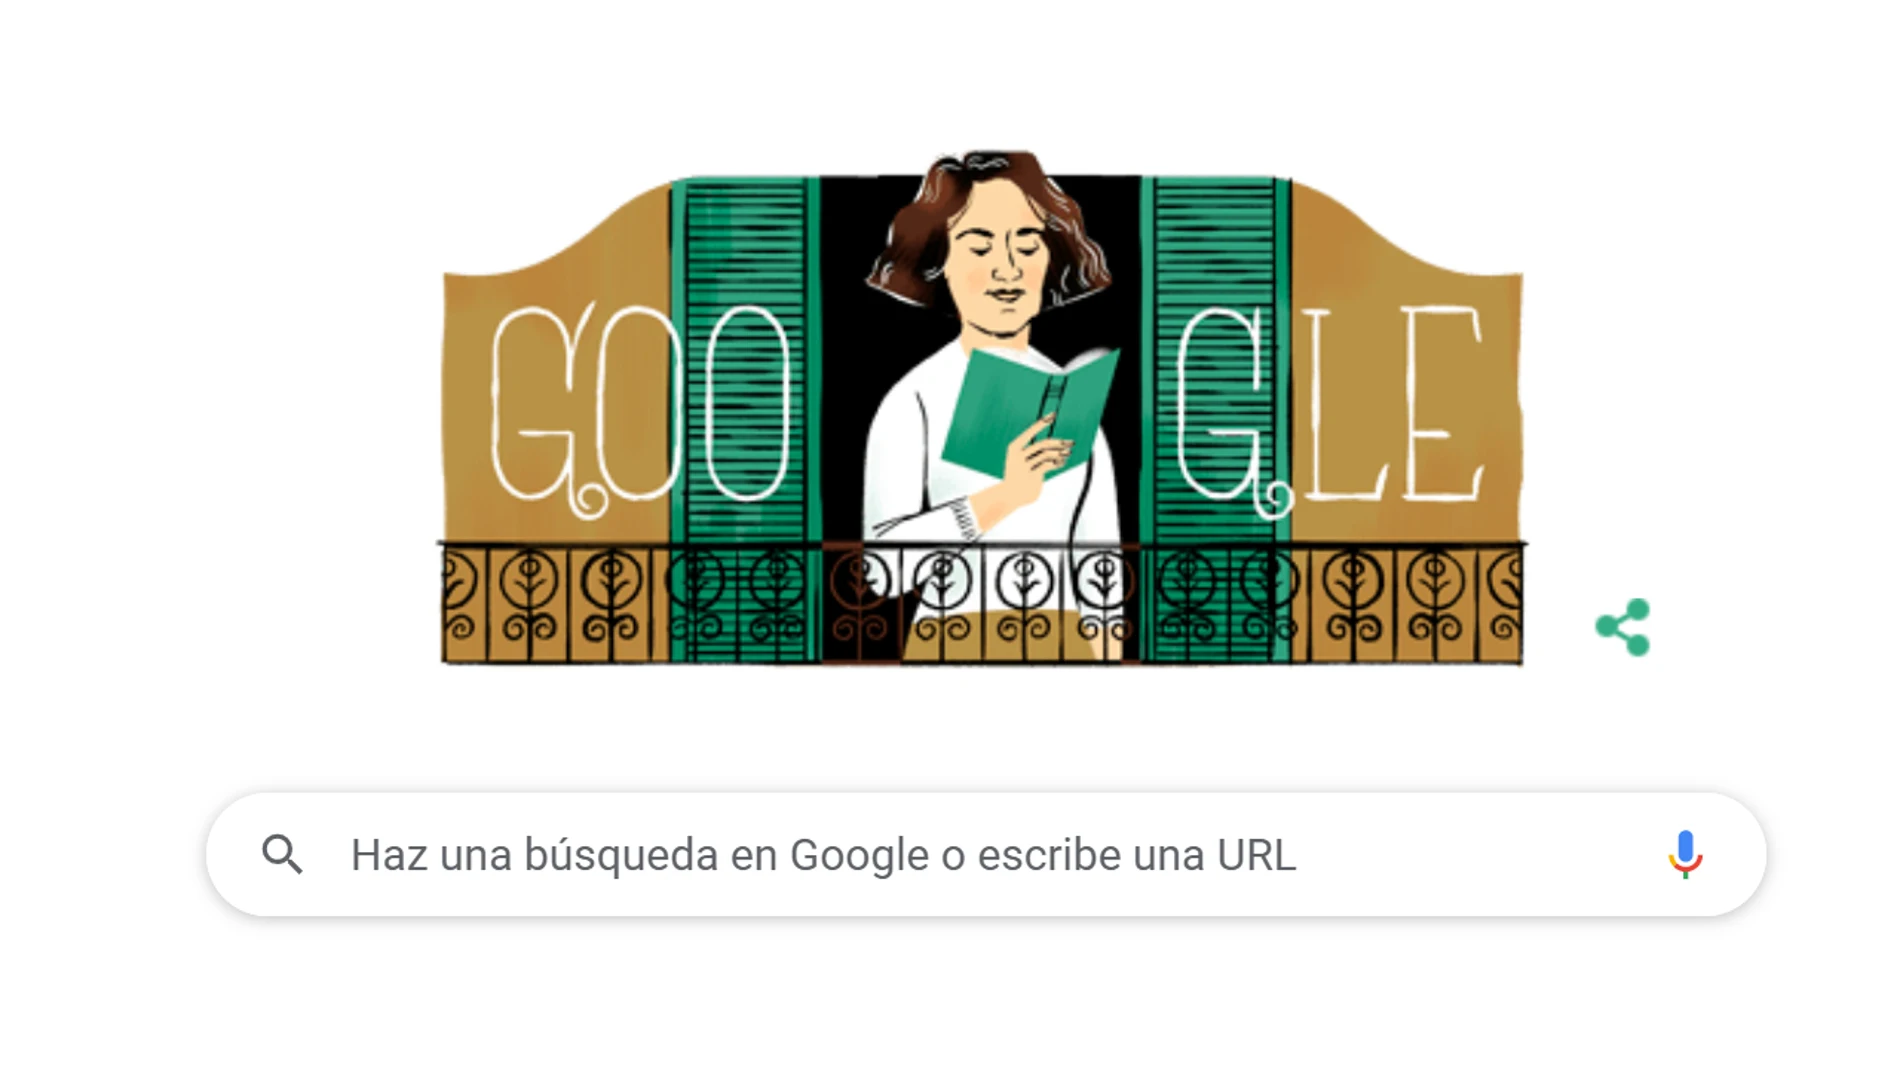 100.º aniversario del nacimiento de Carmen Laforet en el doodle de Google